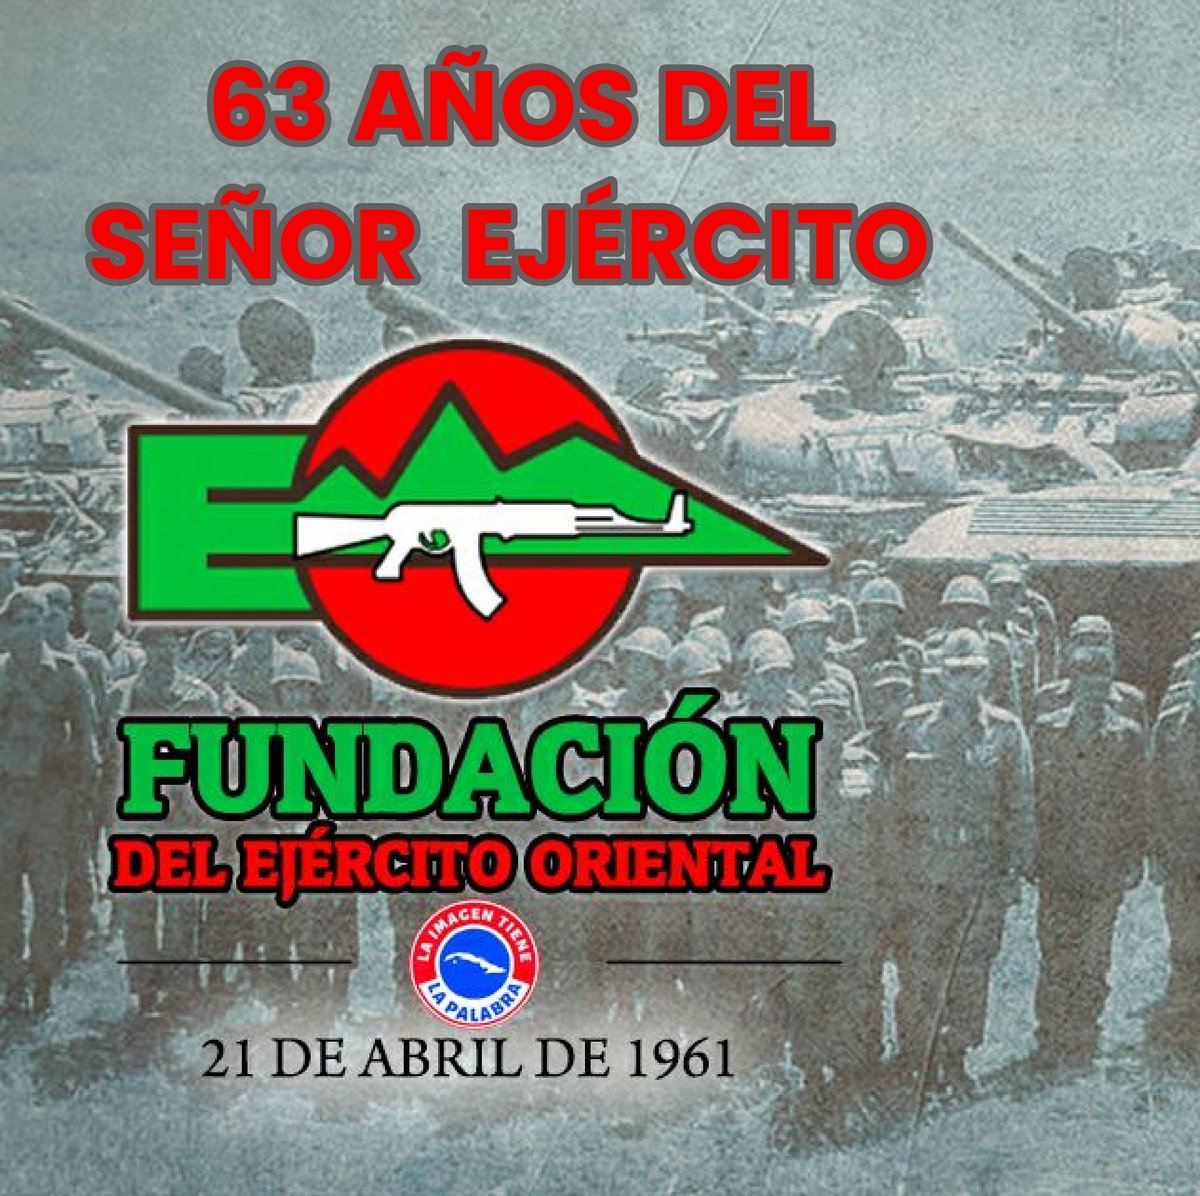 El Ejército Oriental fundado el 21 de abril de 1961 y tuvo como primer jefe al entonces ministro de las Fuerzas Armadas Revolucionarias, Raúl Castro, seguimos de Verde Olivo #Cuba Felicidades!!!🇨🇺💪